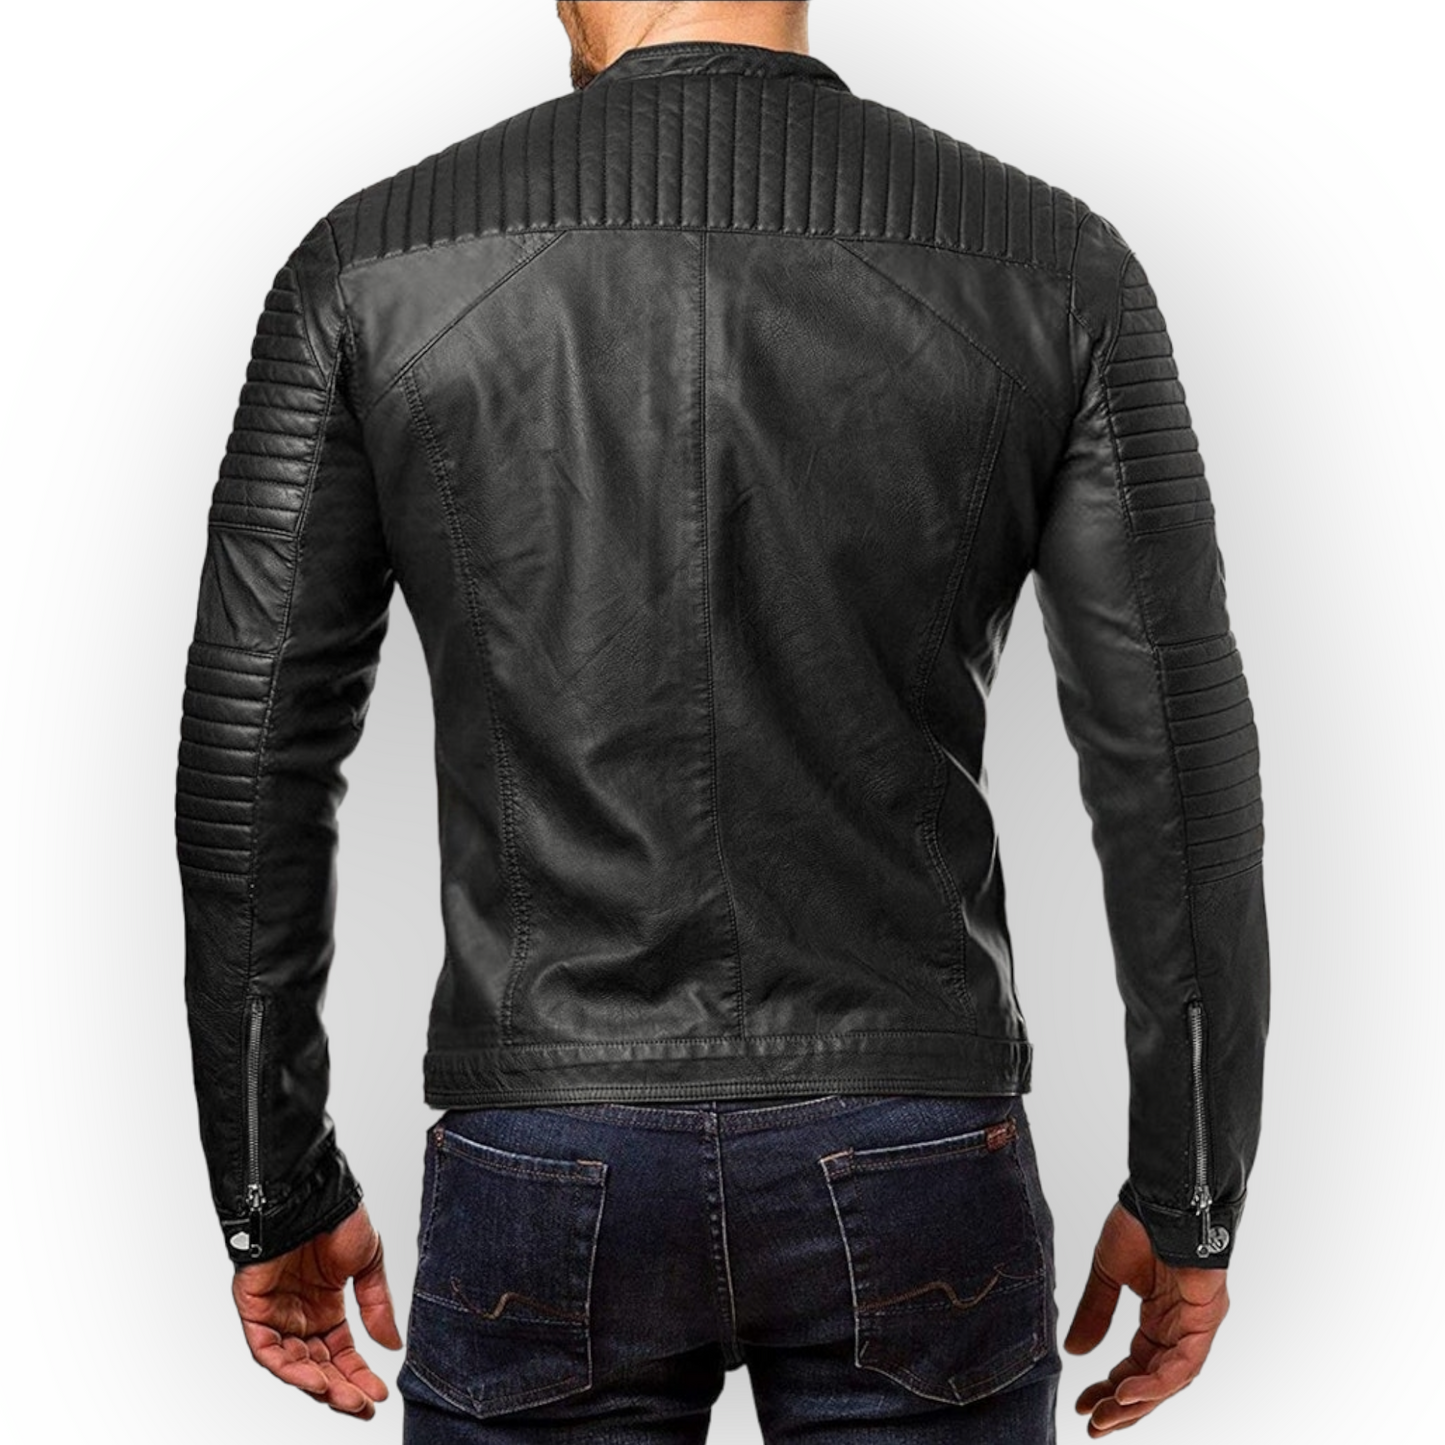 Premium Quality Soft Lambskin Leather jacket for Men's Soft Leather Biker jacket for Men Gift for Him Stylish Leather Jacket